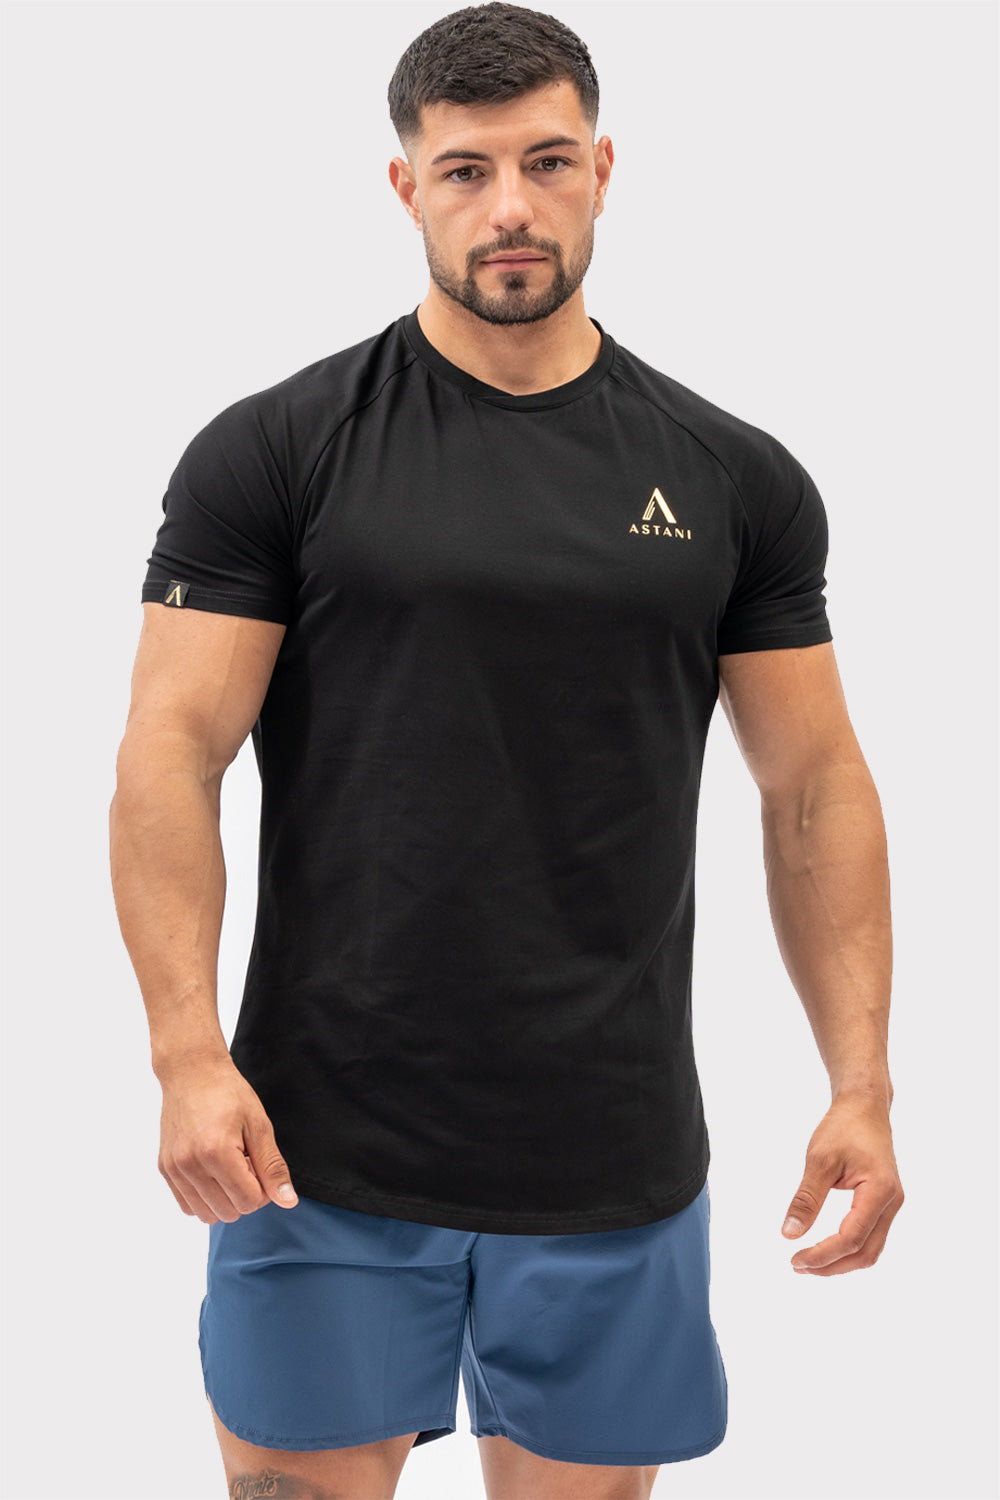 A CODE T-Shirt - Sort